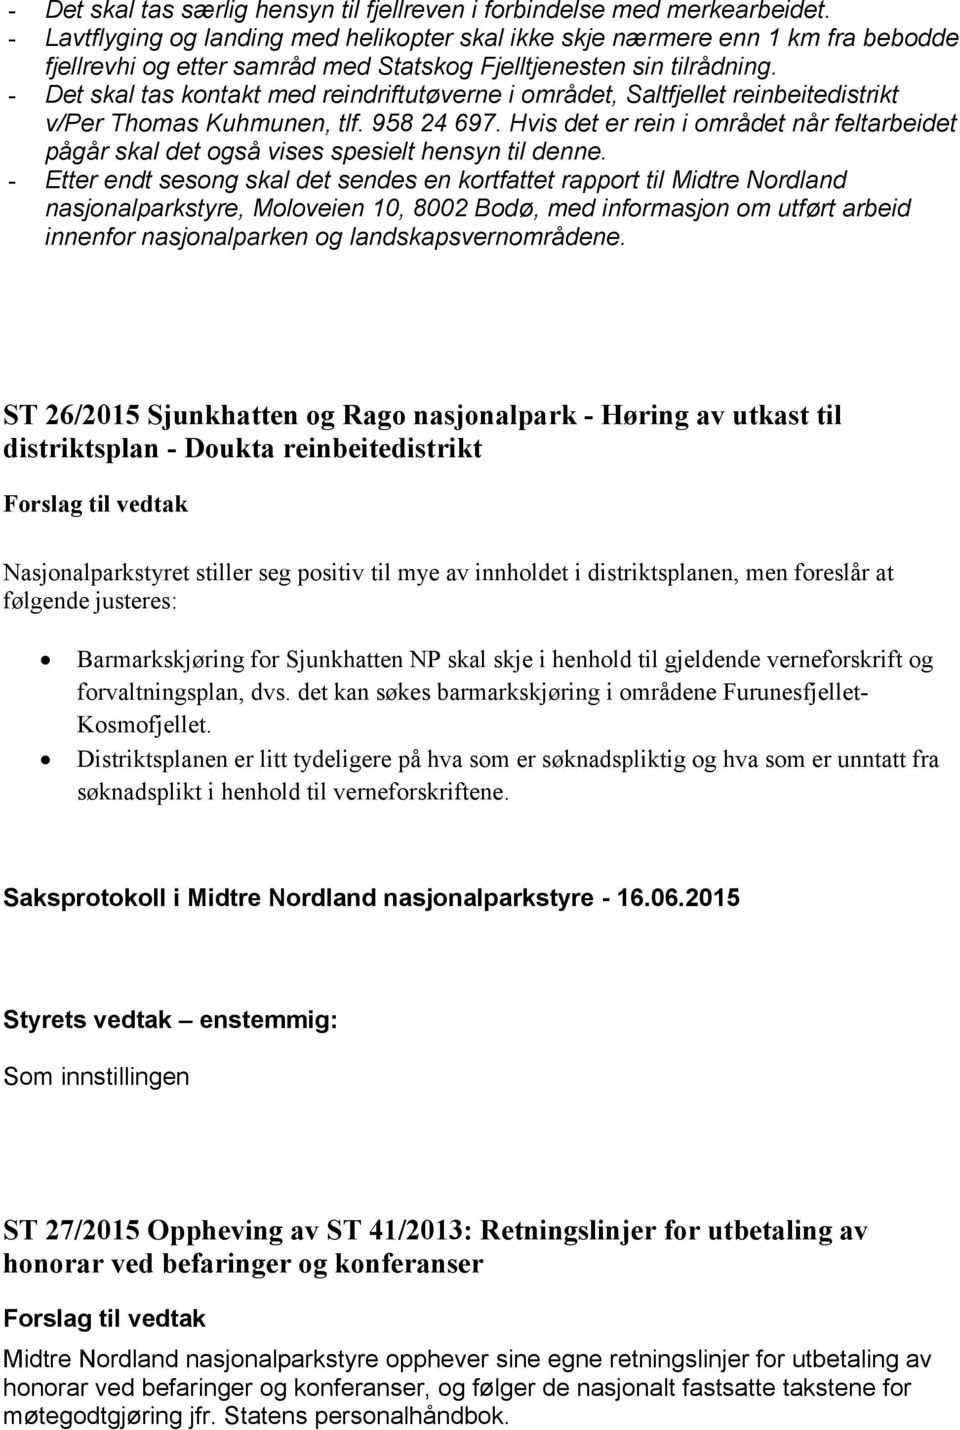 - Det skal tas kontakt med reindriftutøverne i området, Saltfjellet reinbeitedistrikt v/per Thomas Kuhmunen, tlf. 958 24 697.